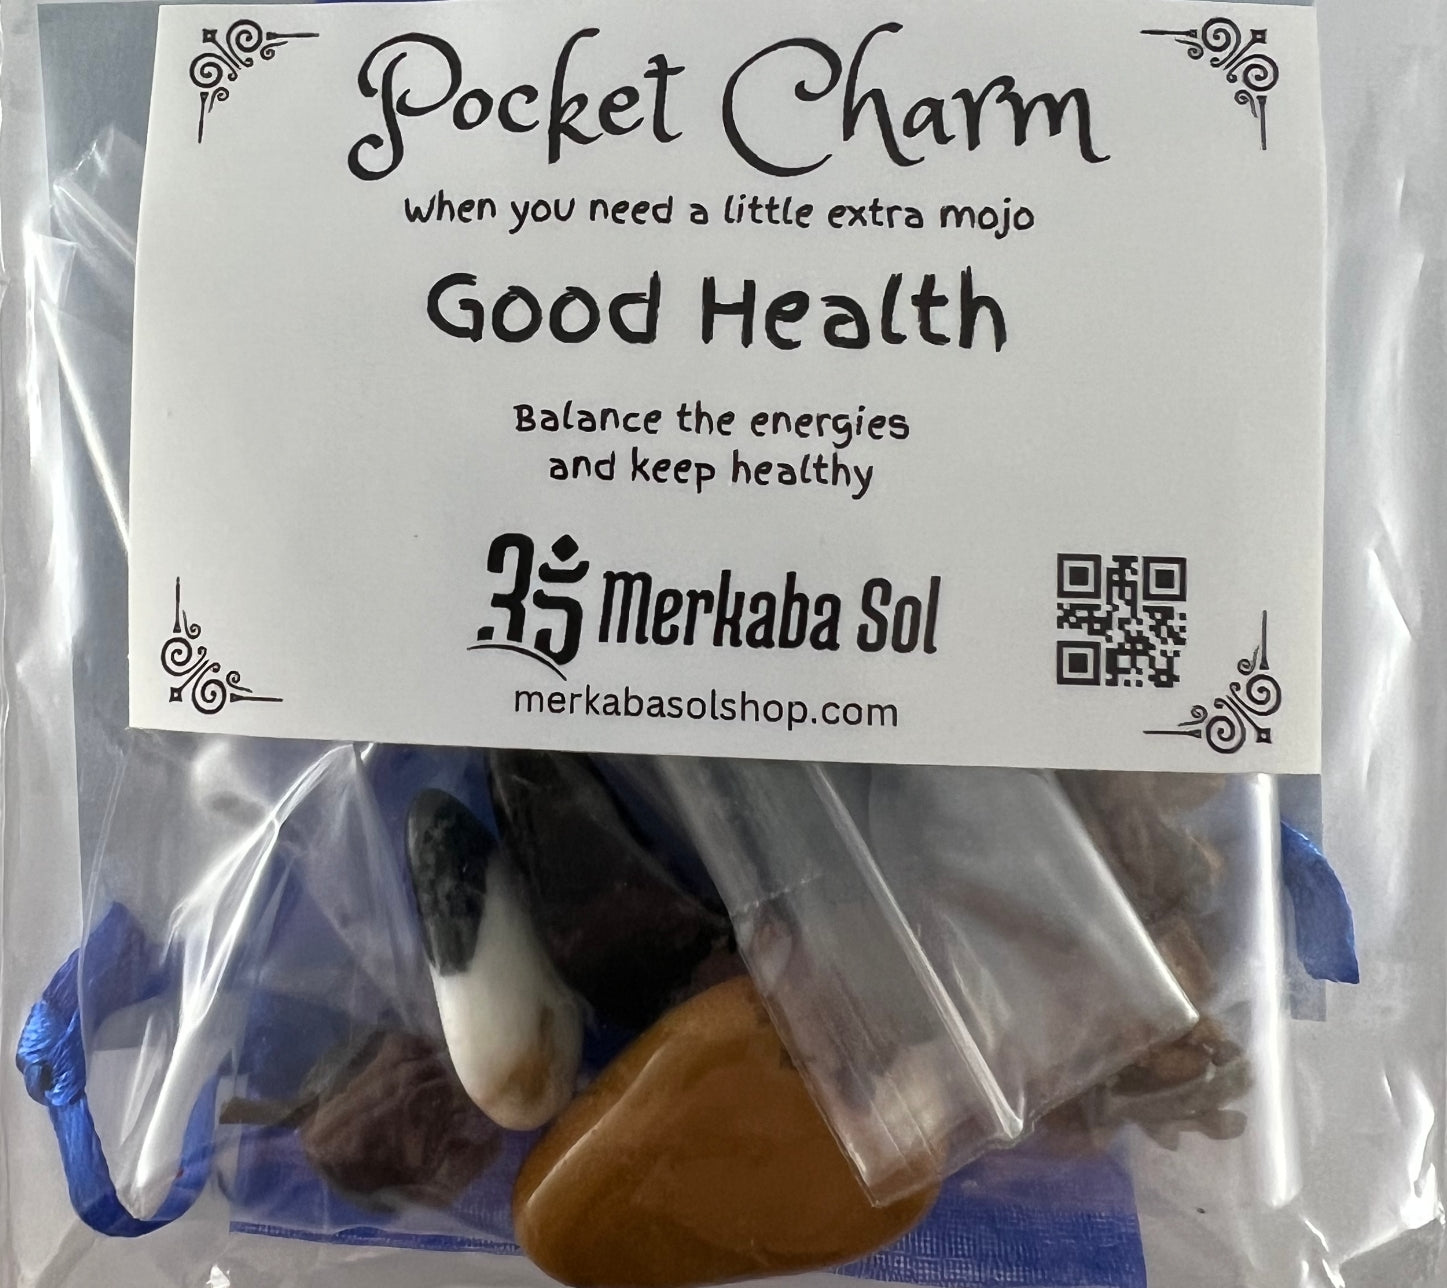 Good Health Pocket Charm Kit